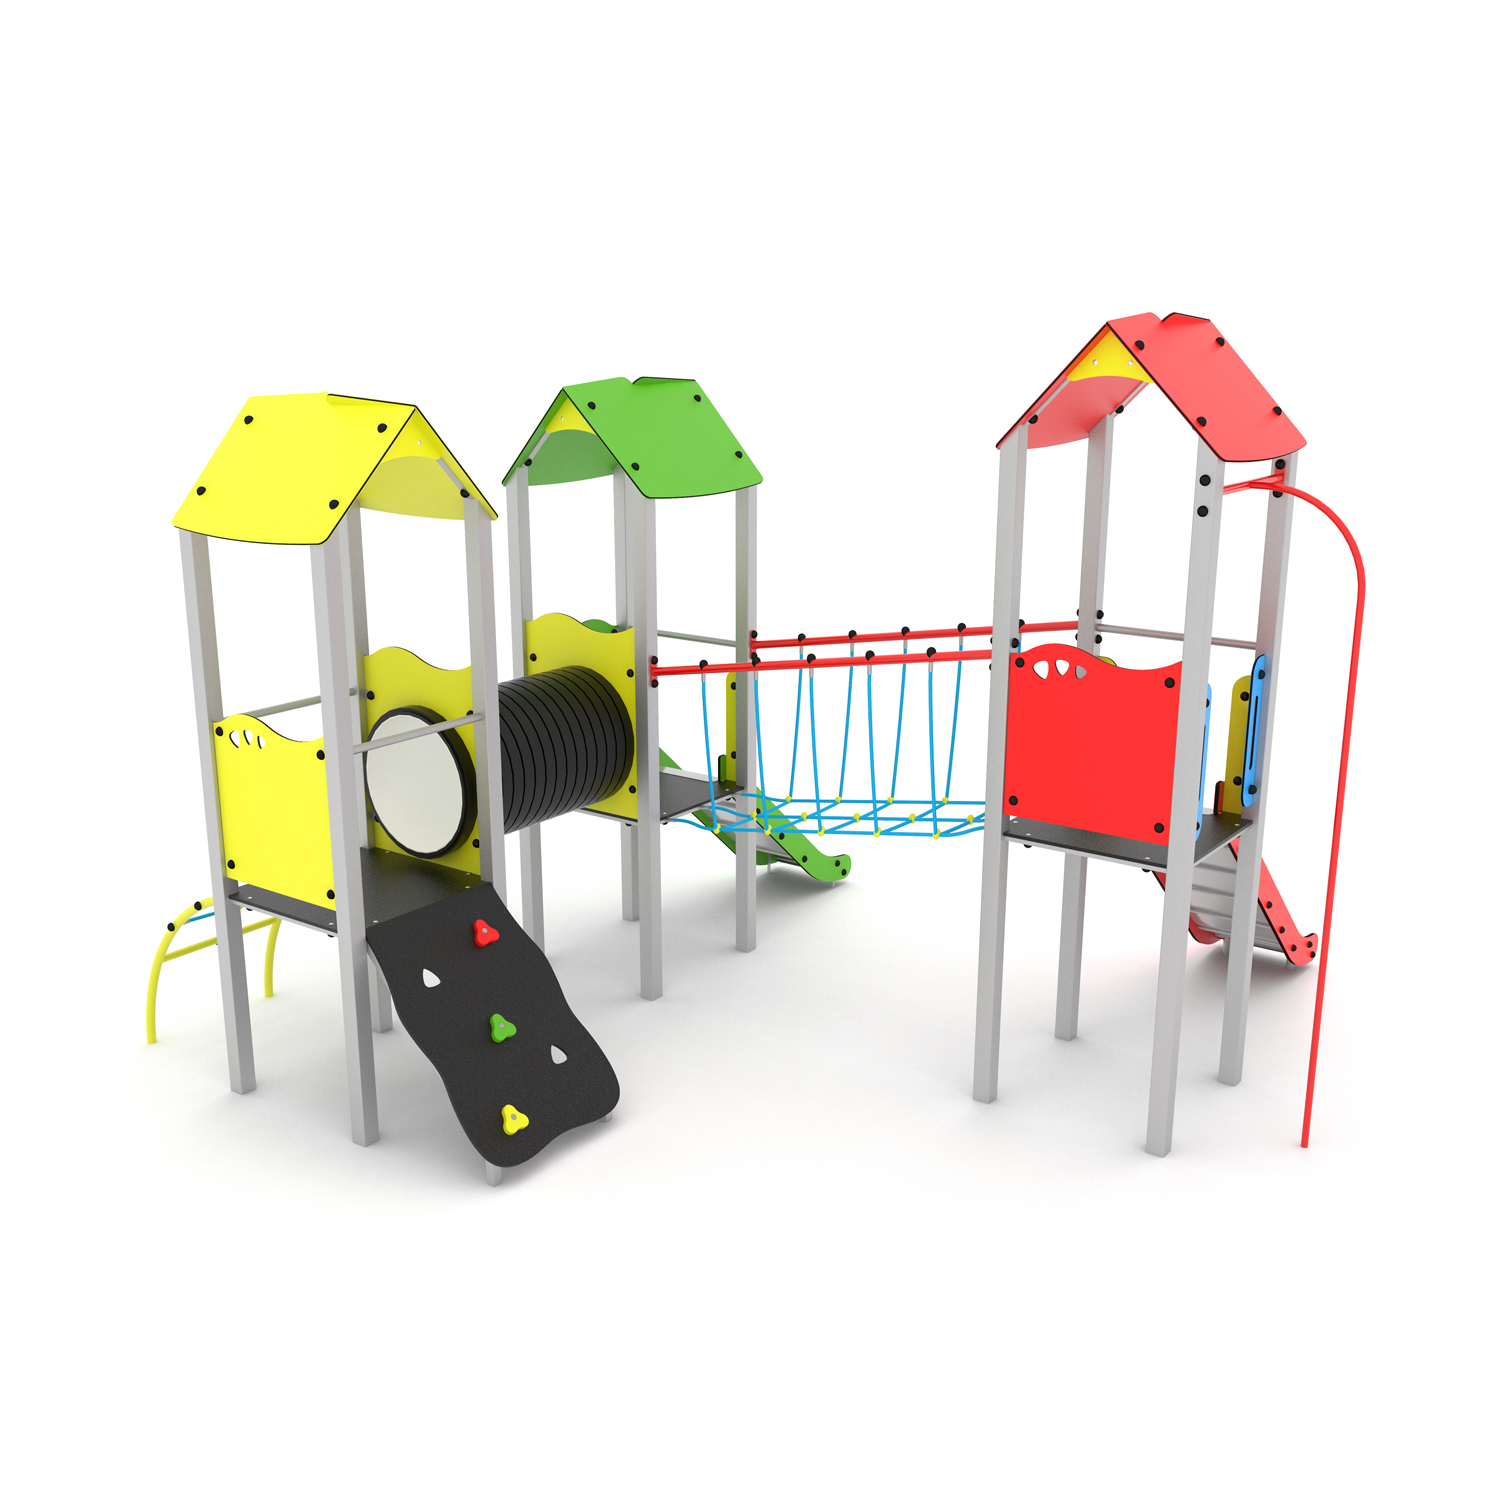 CGS Plieninis daugiafunkcinis vaikų žaidimų aikštelės įrenginys PD-VP-010